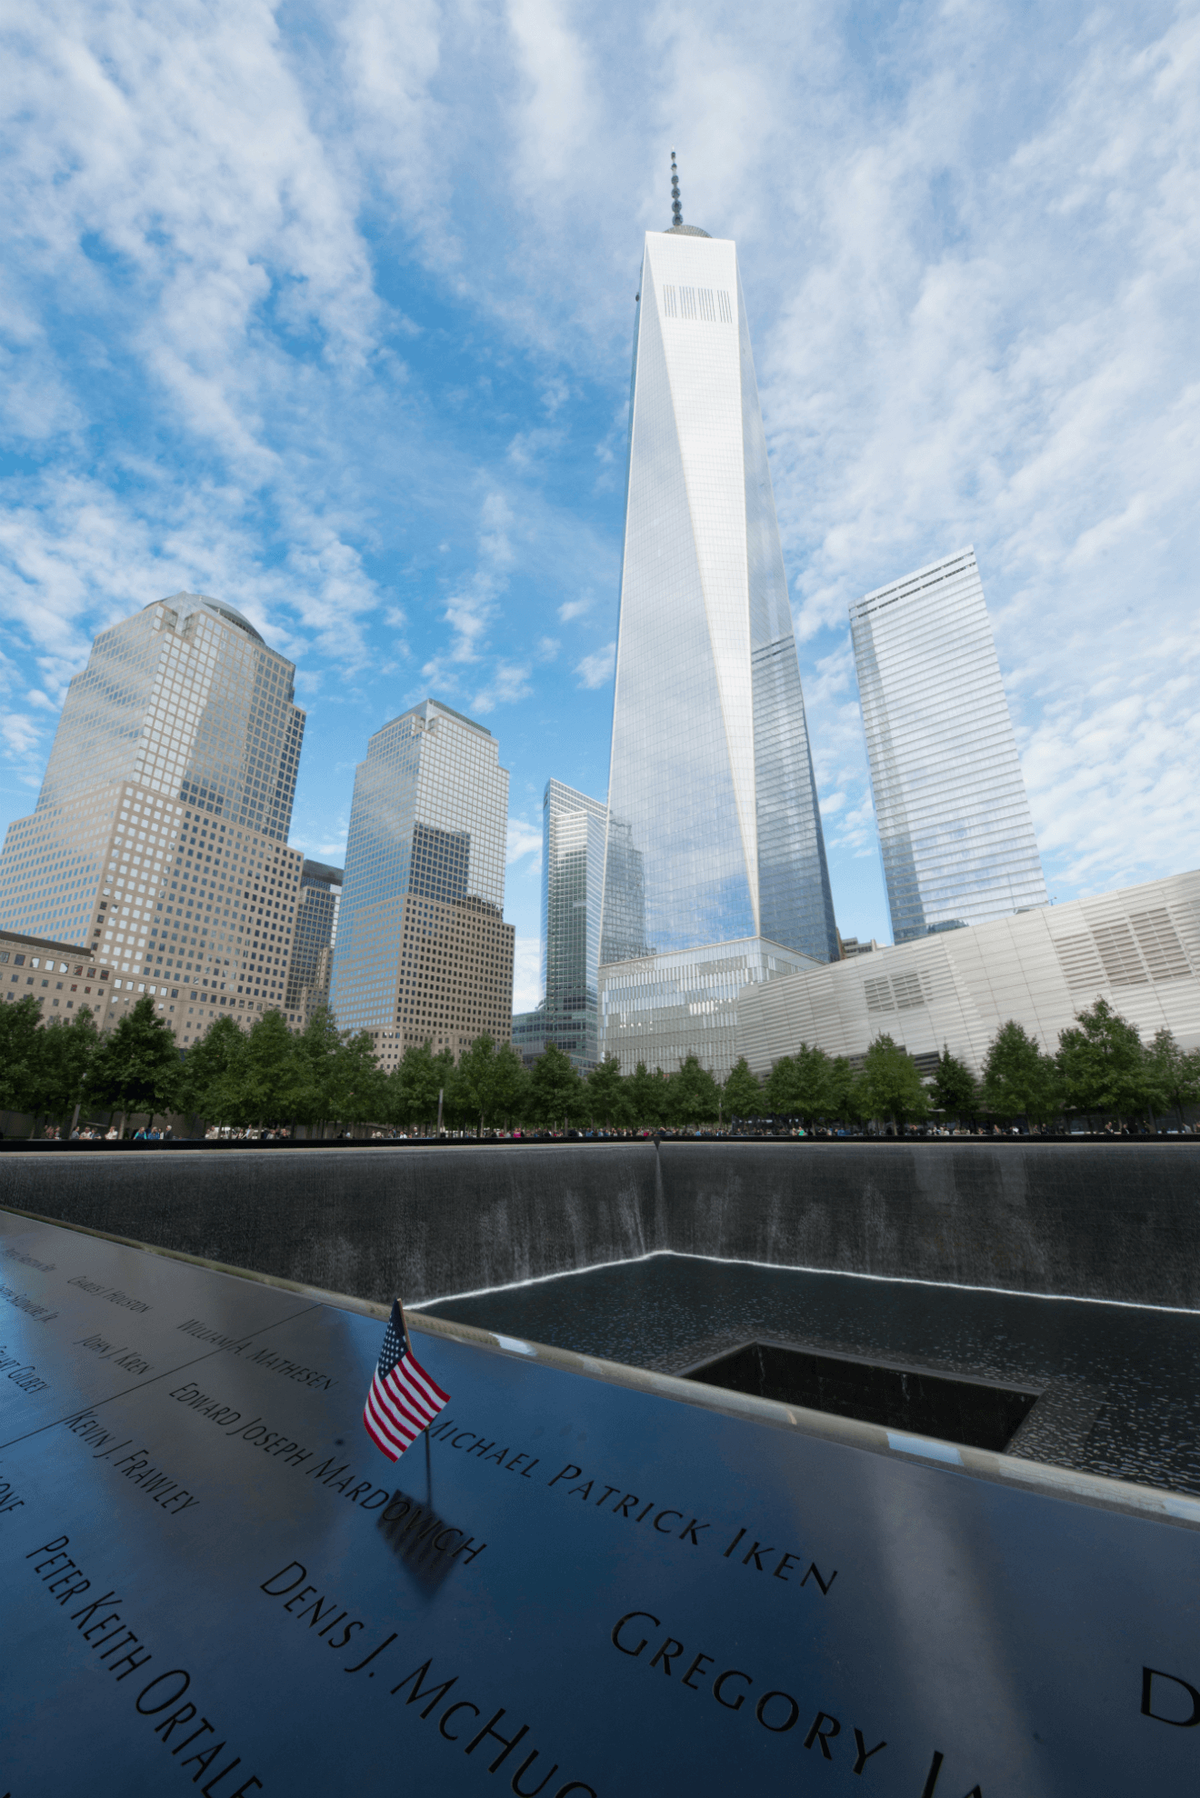 Wtorek we wrześniu: Utrzymujące się skutki 11 września